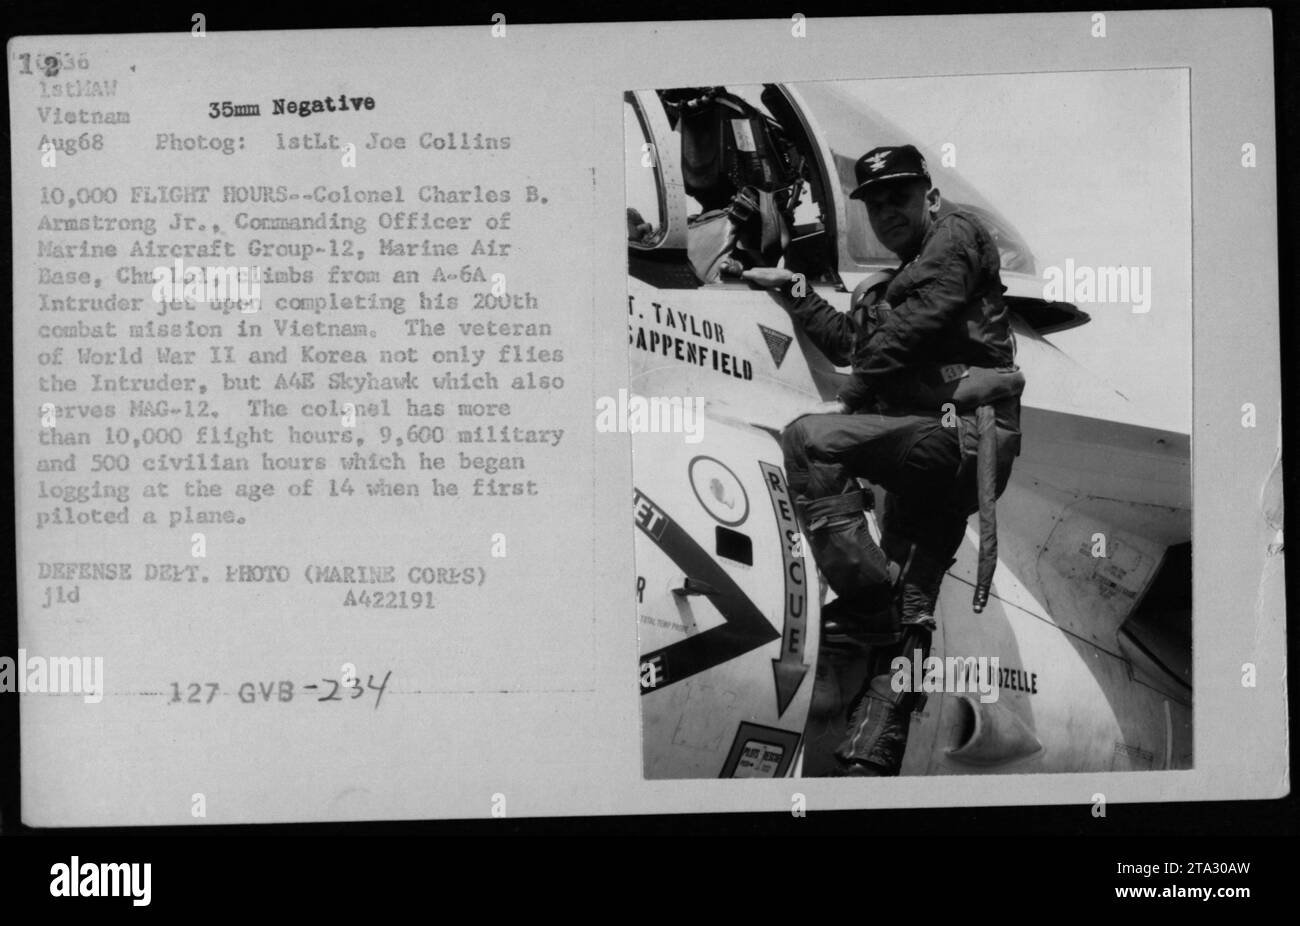 Il colonnello Charles B. Armstrong Jr., comandante del Marine Aircraft Group-12, Marine Air base, Chu Lai, viene visto uscire dal suo A-6A Intruder jet dopo aver completato la sua 200a missione di combattimento in Vietnam. È un veterano della seconda guerra mondiale e della Corea, con oltre 10.000 ore di volo, sia militari che civili. Foto scattata nell'agosto 1968. Foto Stock